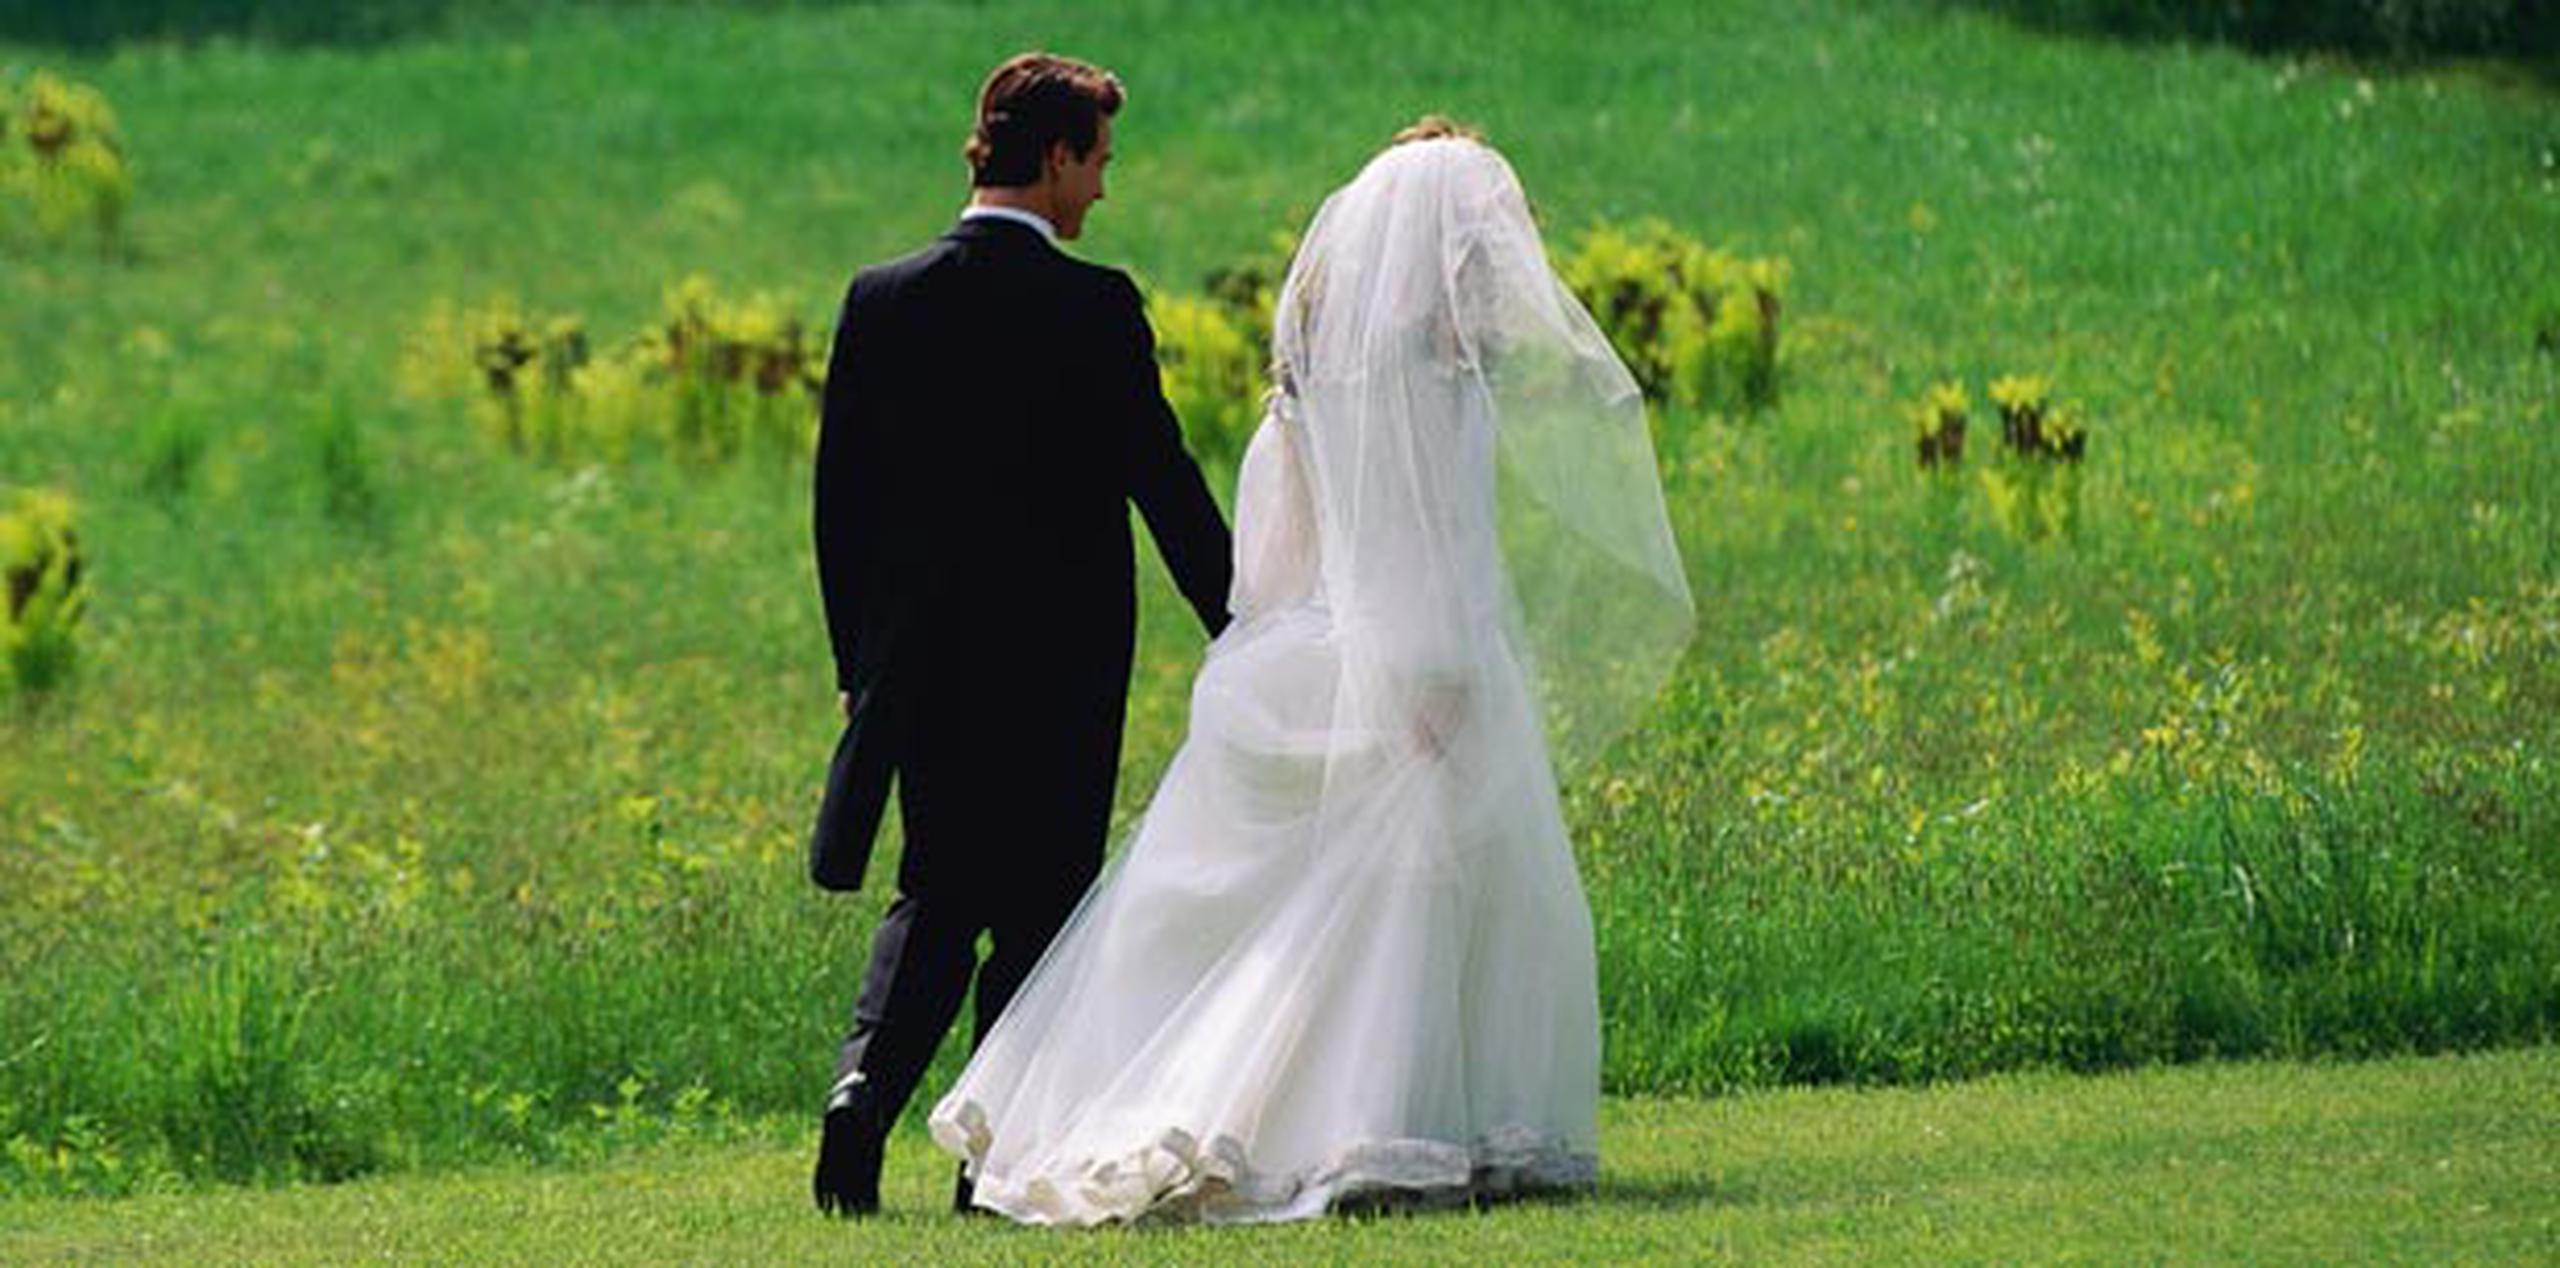 Conforme van pasando los años, las presiones para contraer matrimonio aumentan. (Archivo)